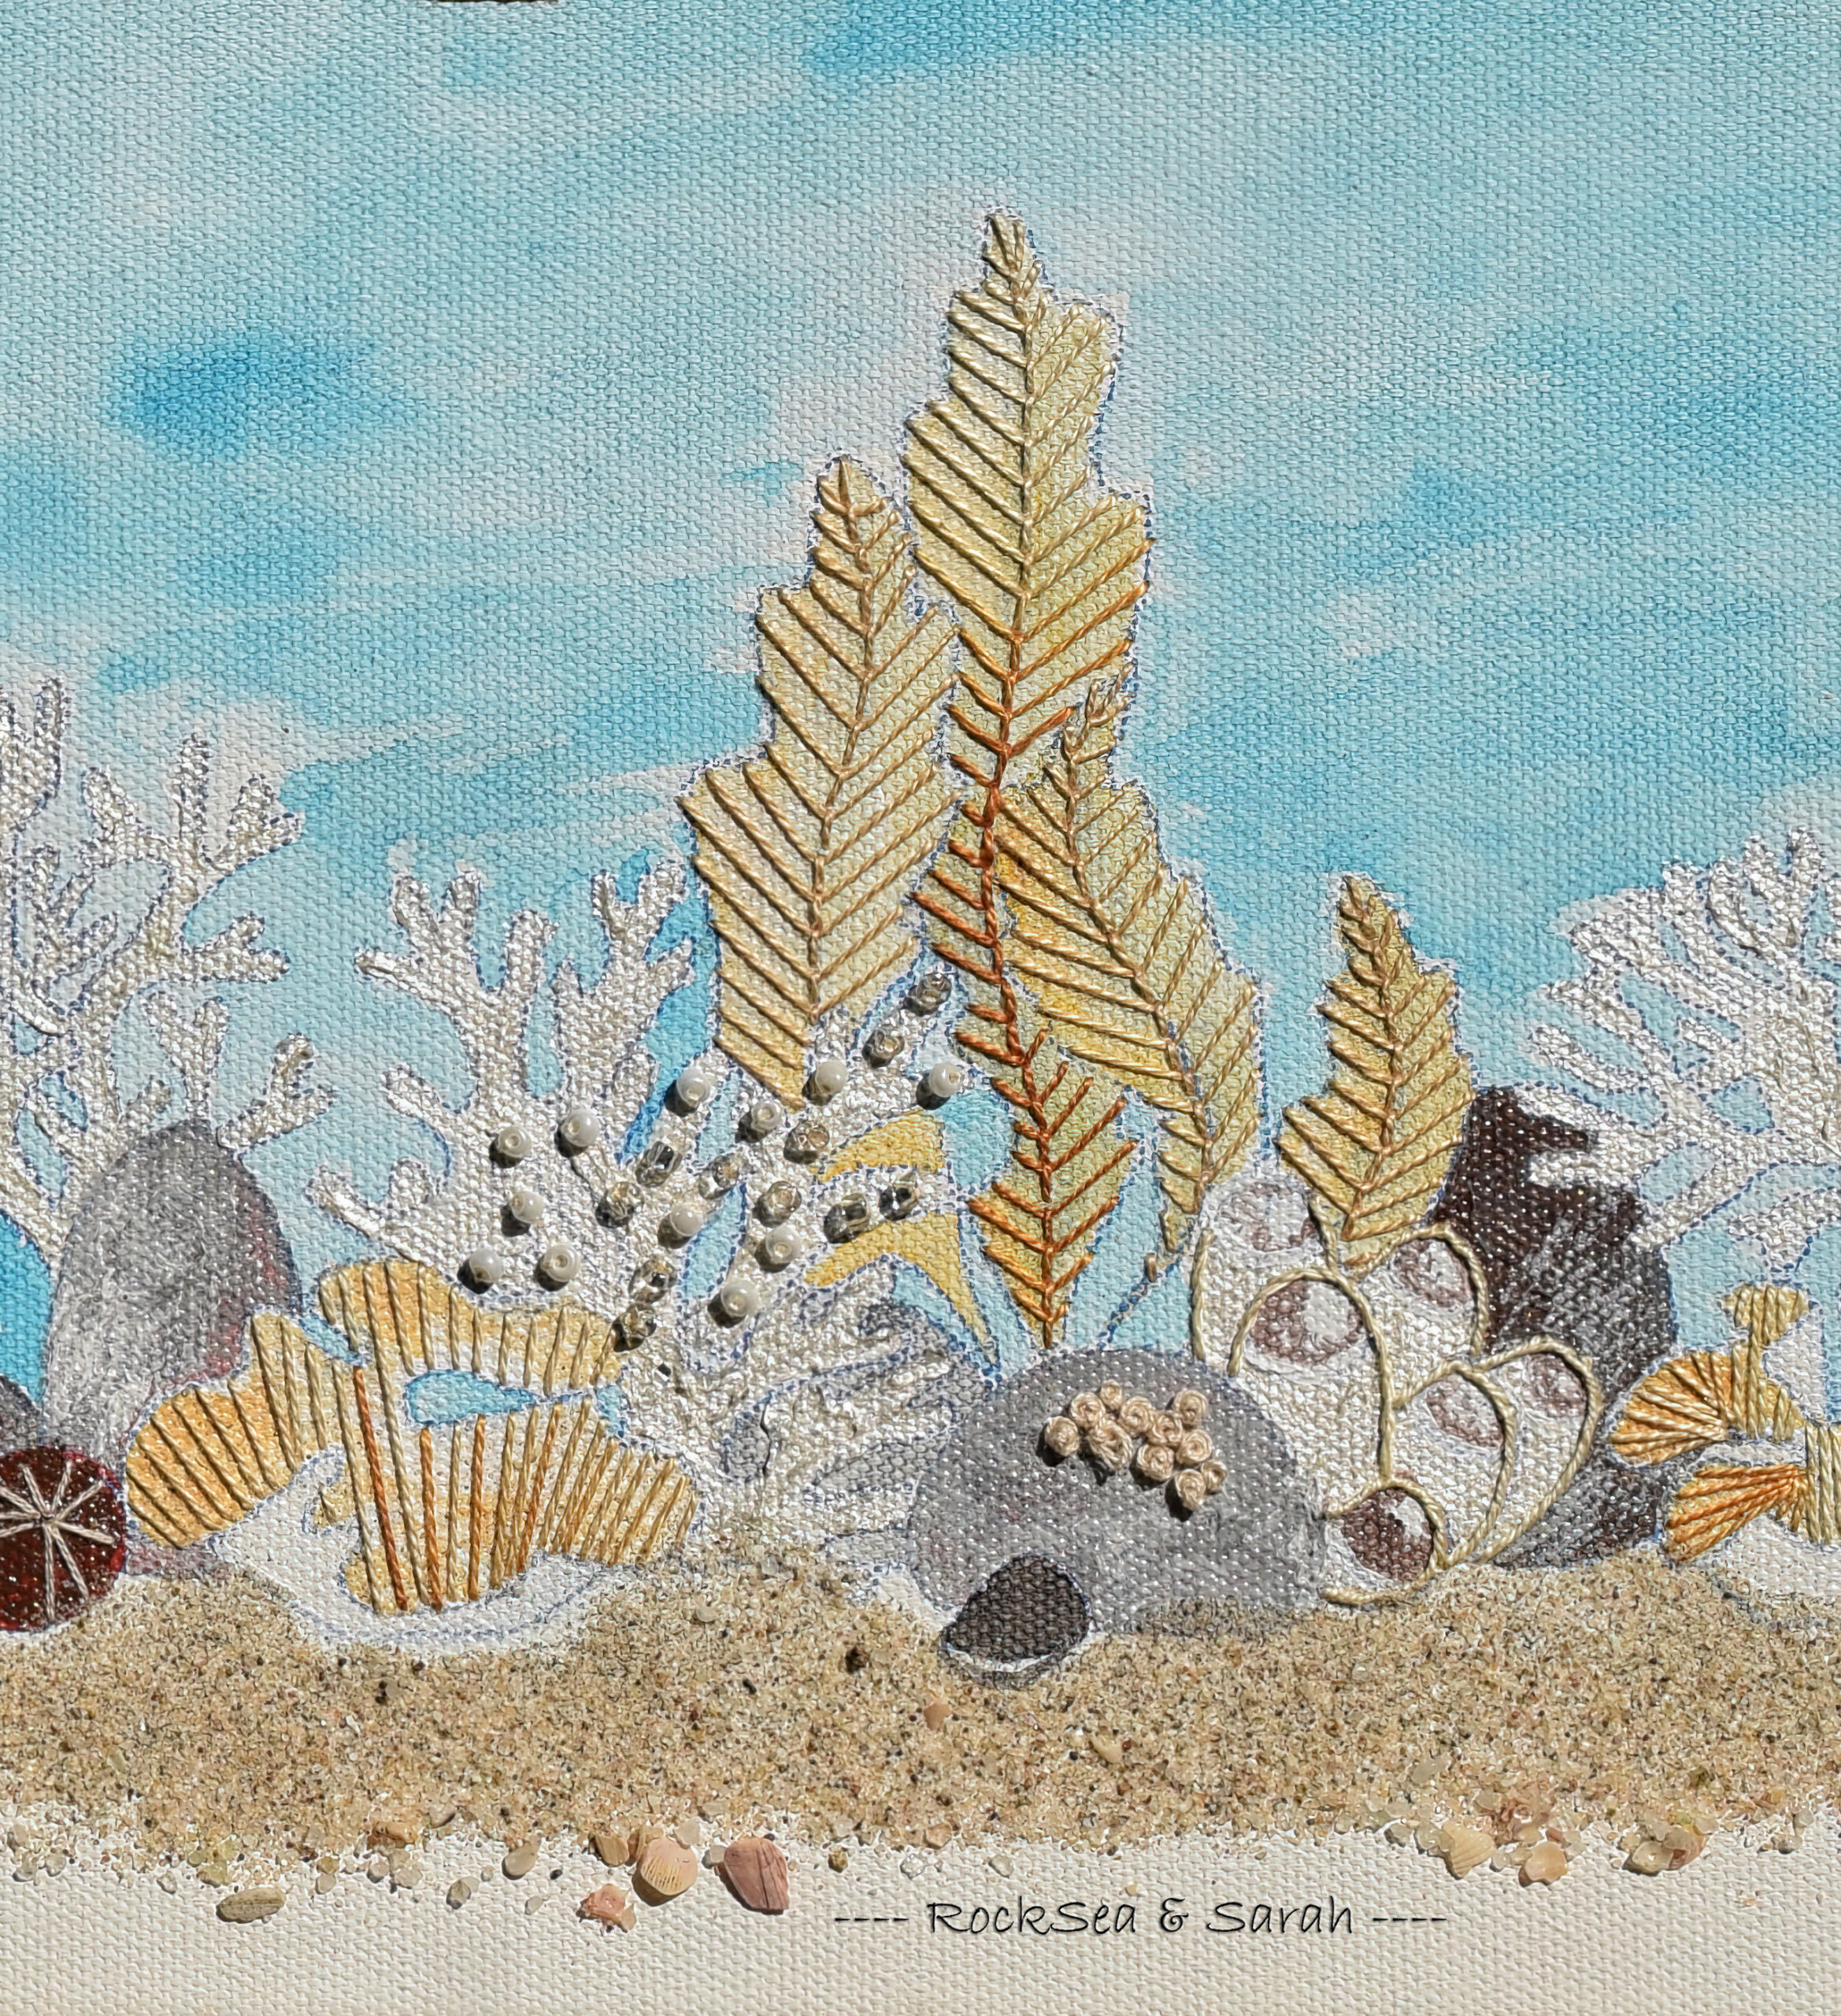 Hawksbill sea turtle, blue sea sponge, kelp, and sea grass under marine heatwave, embroidered